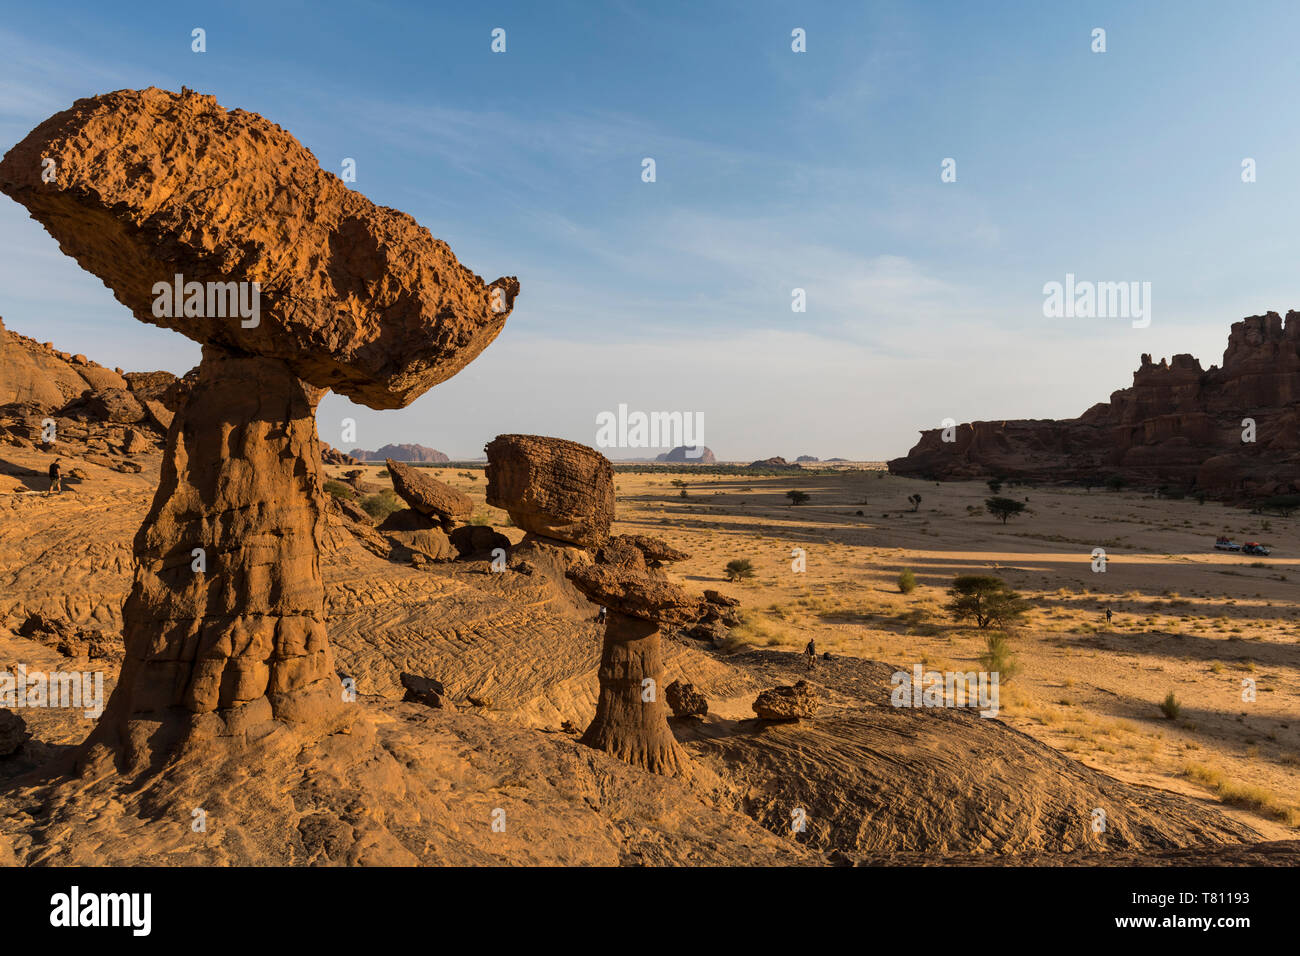 La seta formaciones rocosas, la Meseta de Ennedi, Sitio del Patrimonio Mundial de la UNESCO, la región de Ennedi, Chad, África Foto de stock